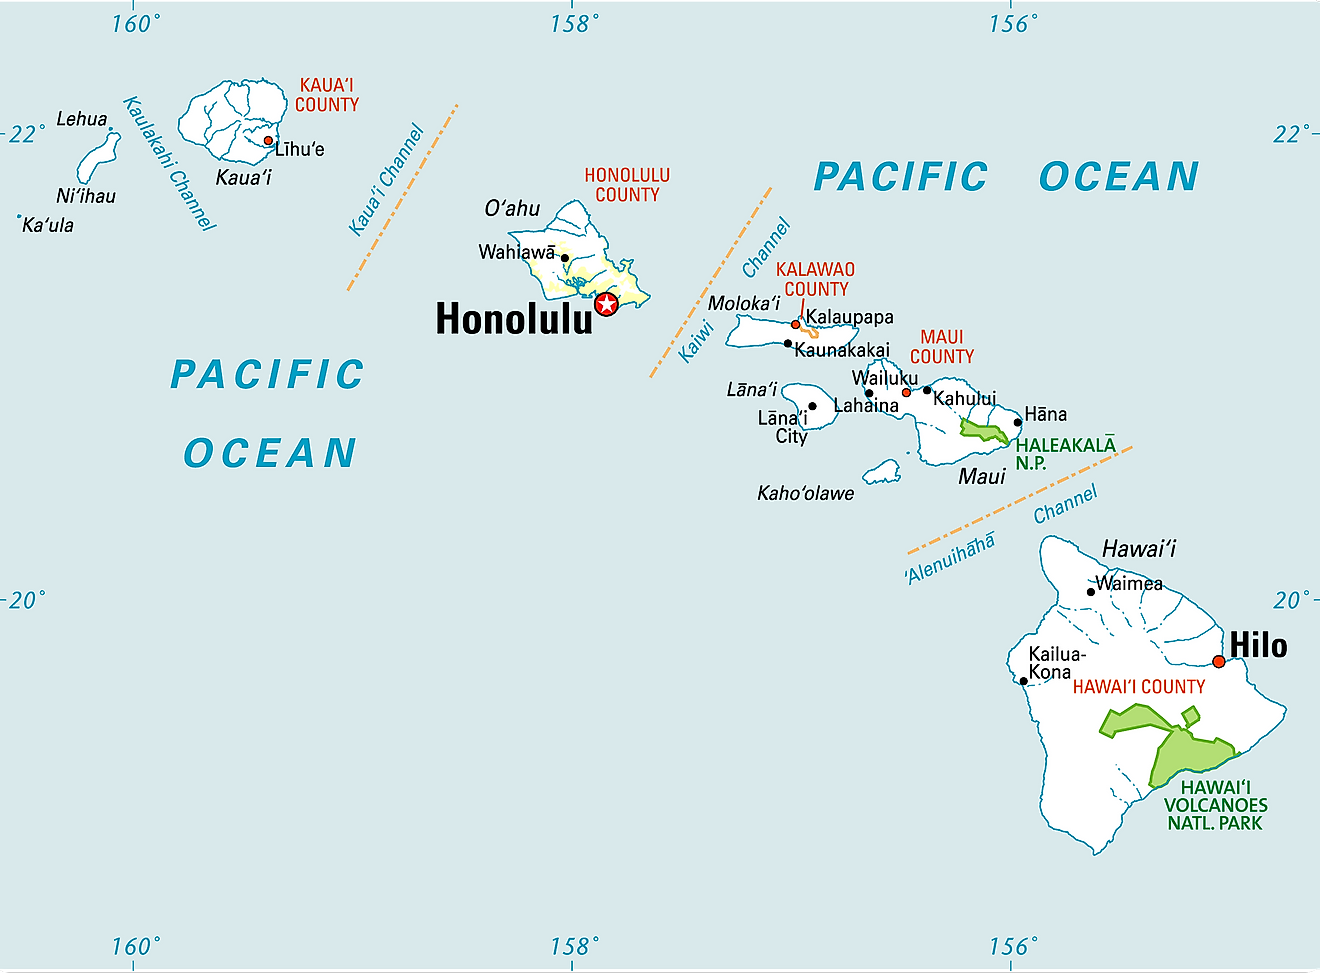 Mapa administrativo de Hawái que muestra sus 5 condados y la ciudad capital - Honolulu